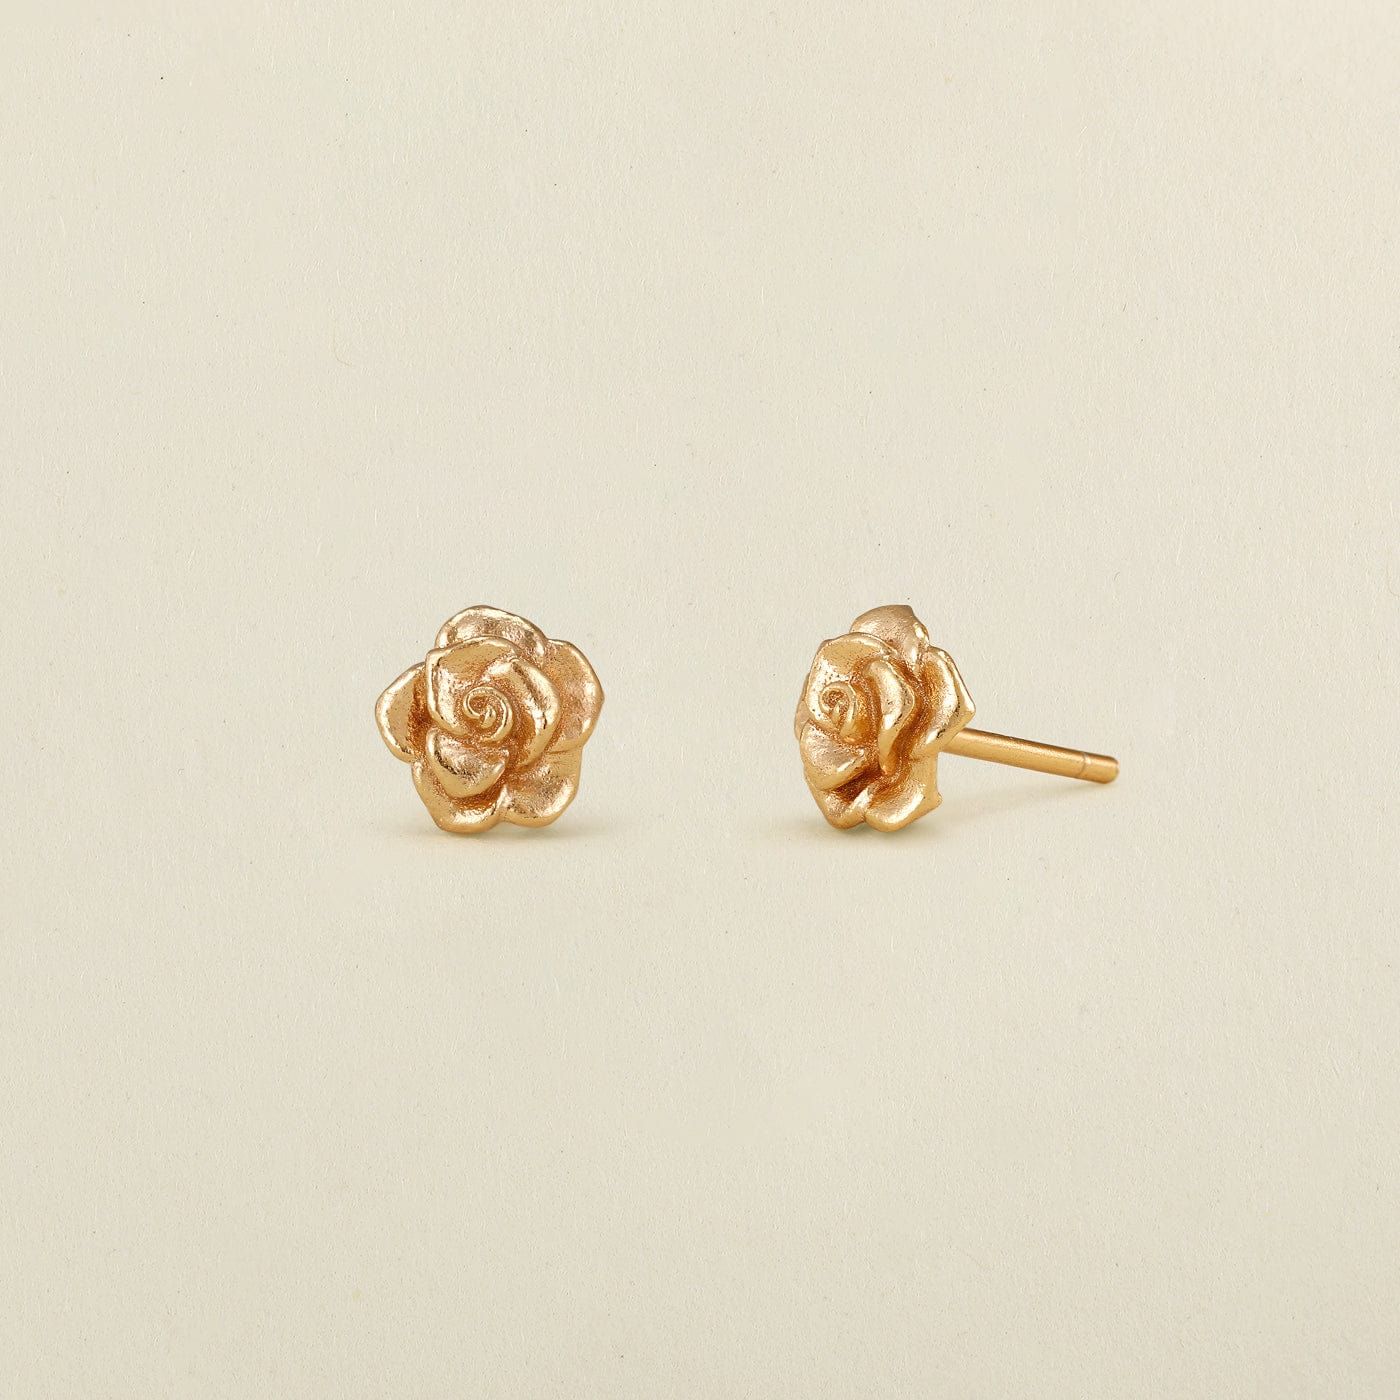 June Birth Flower Stud Earrings | Gold Vermeil | Birth Flower Earrings | Made by Mary (US)